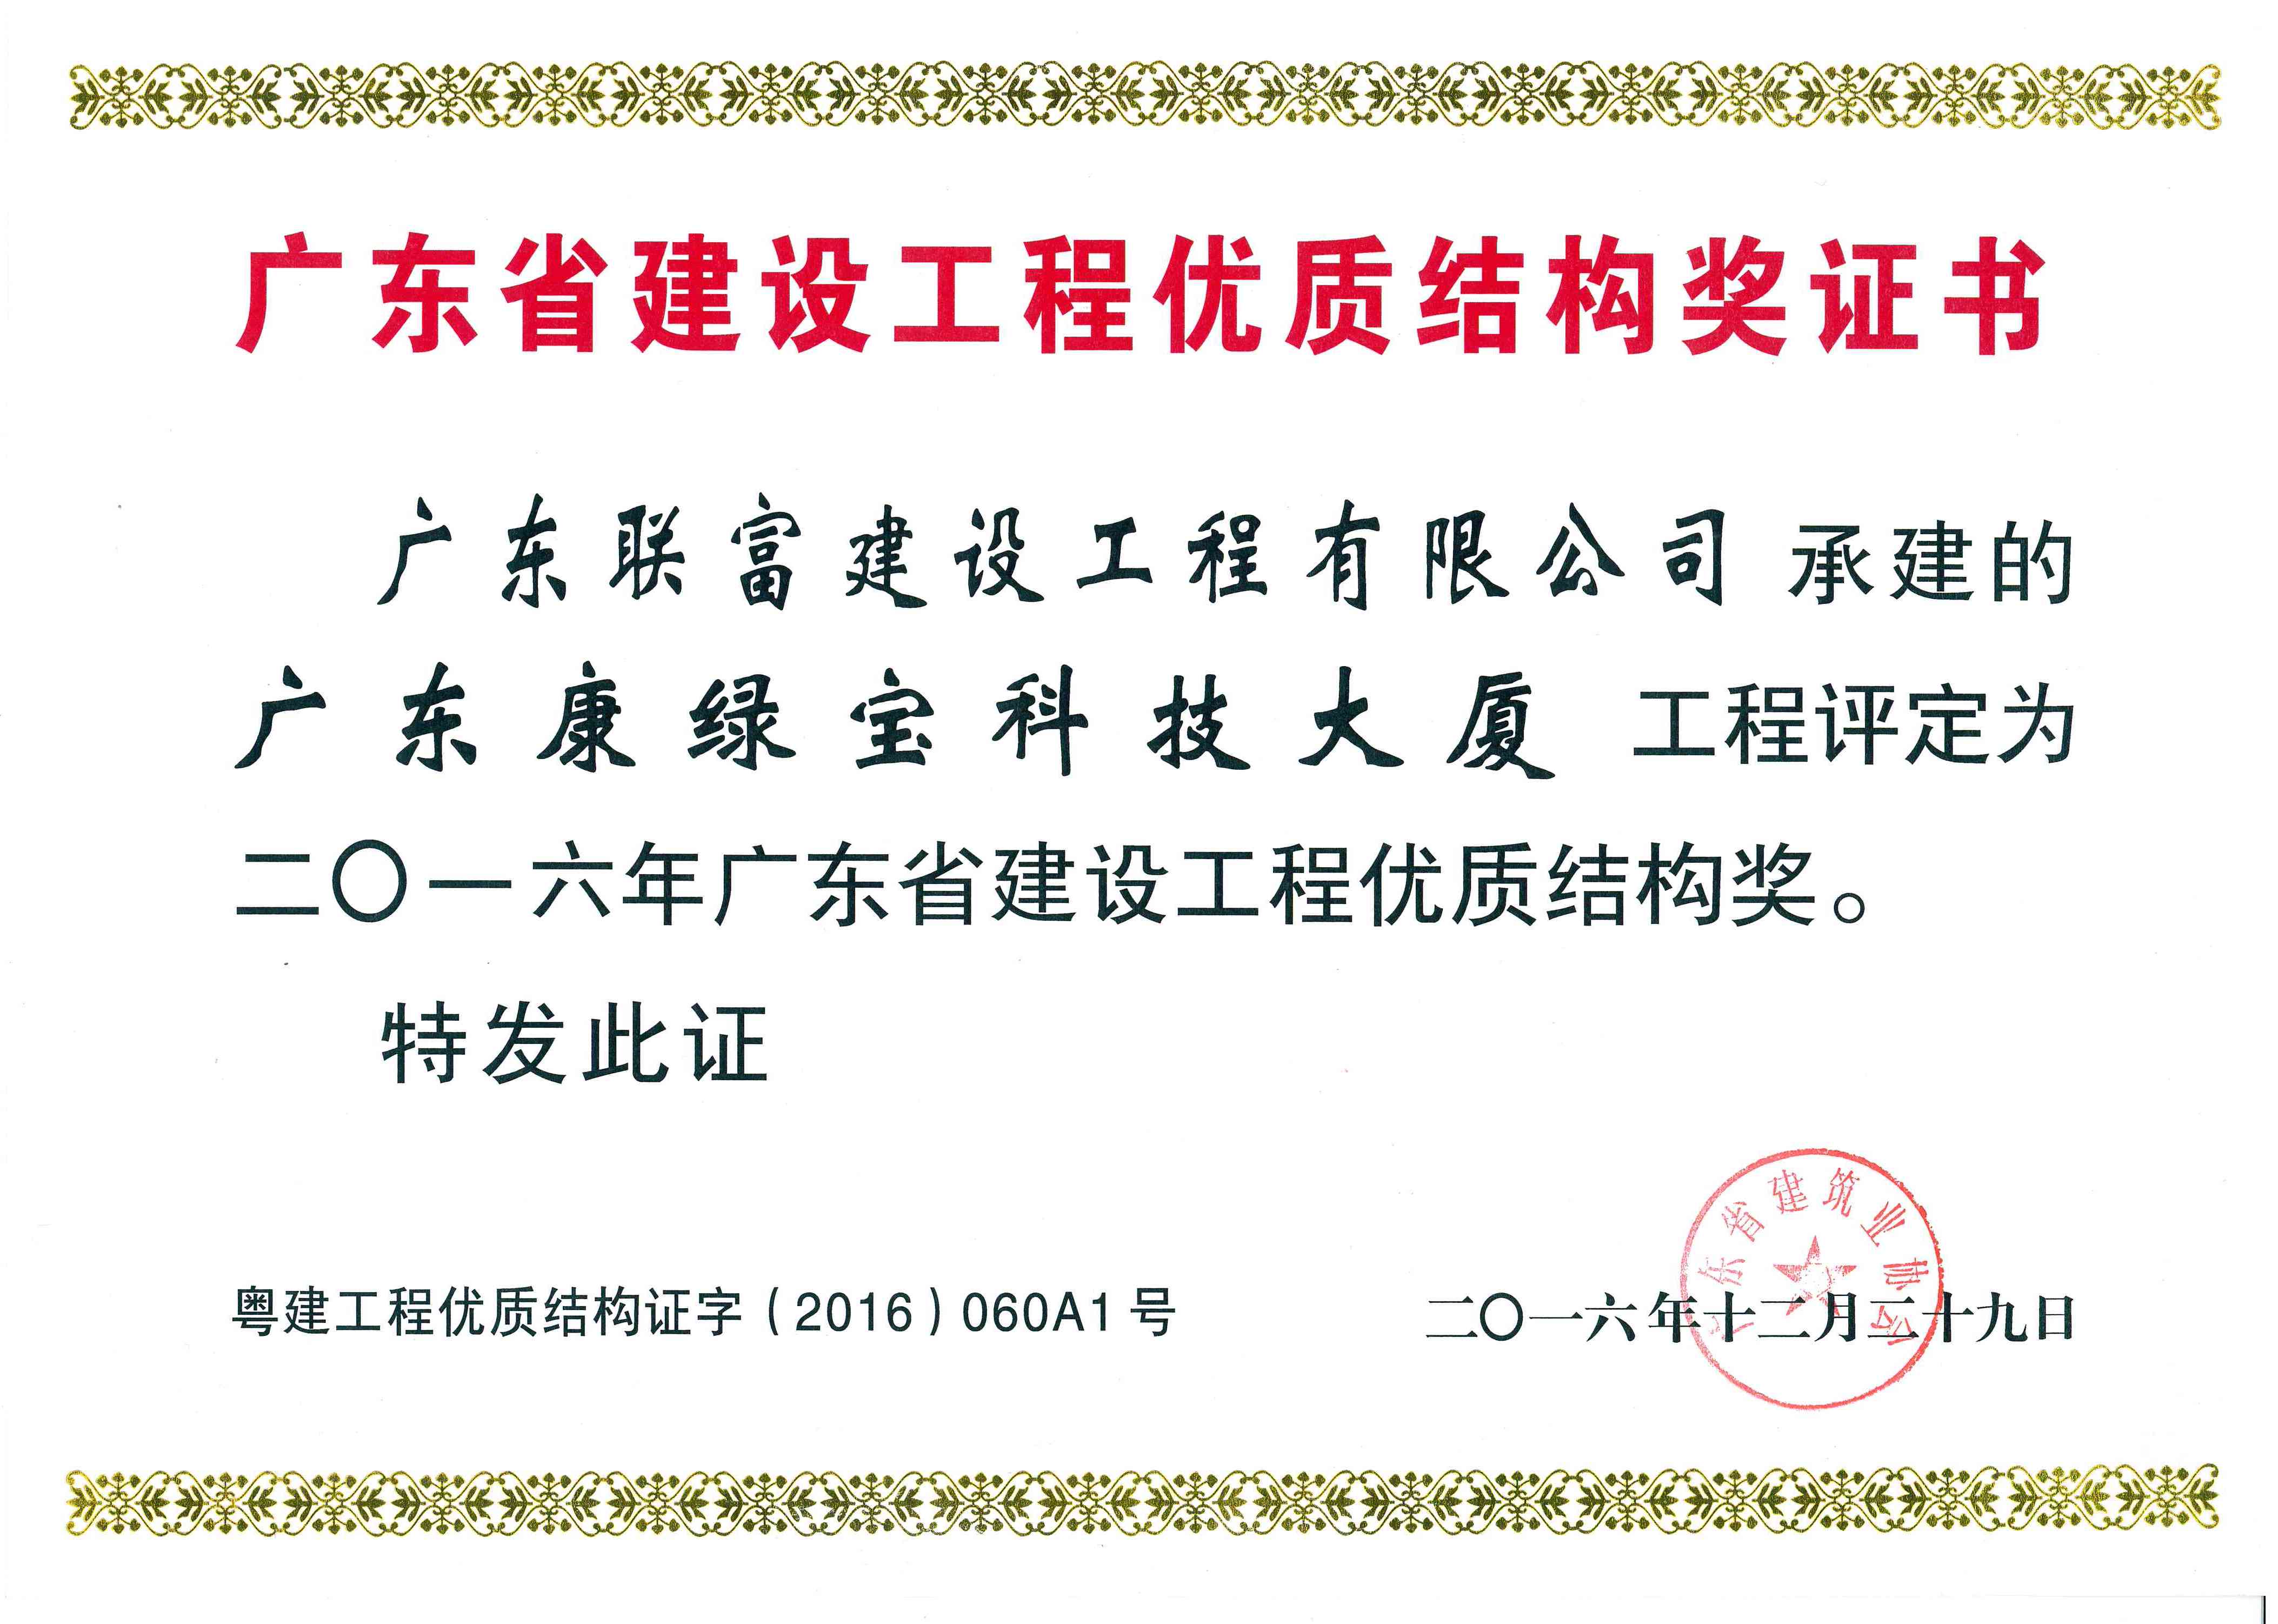 广东康绿宝科技大厦工程项目荣获-2016年广东省建筑工程优质结构奖证书